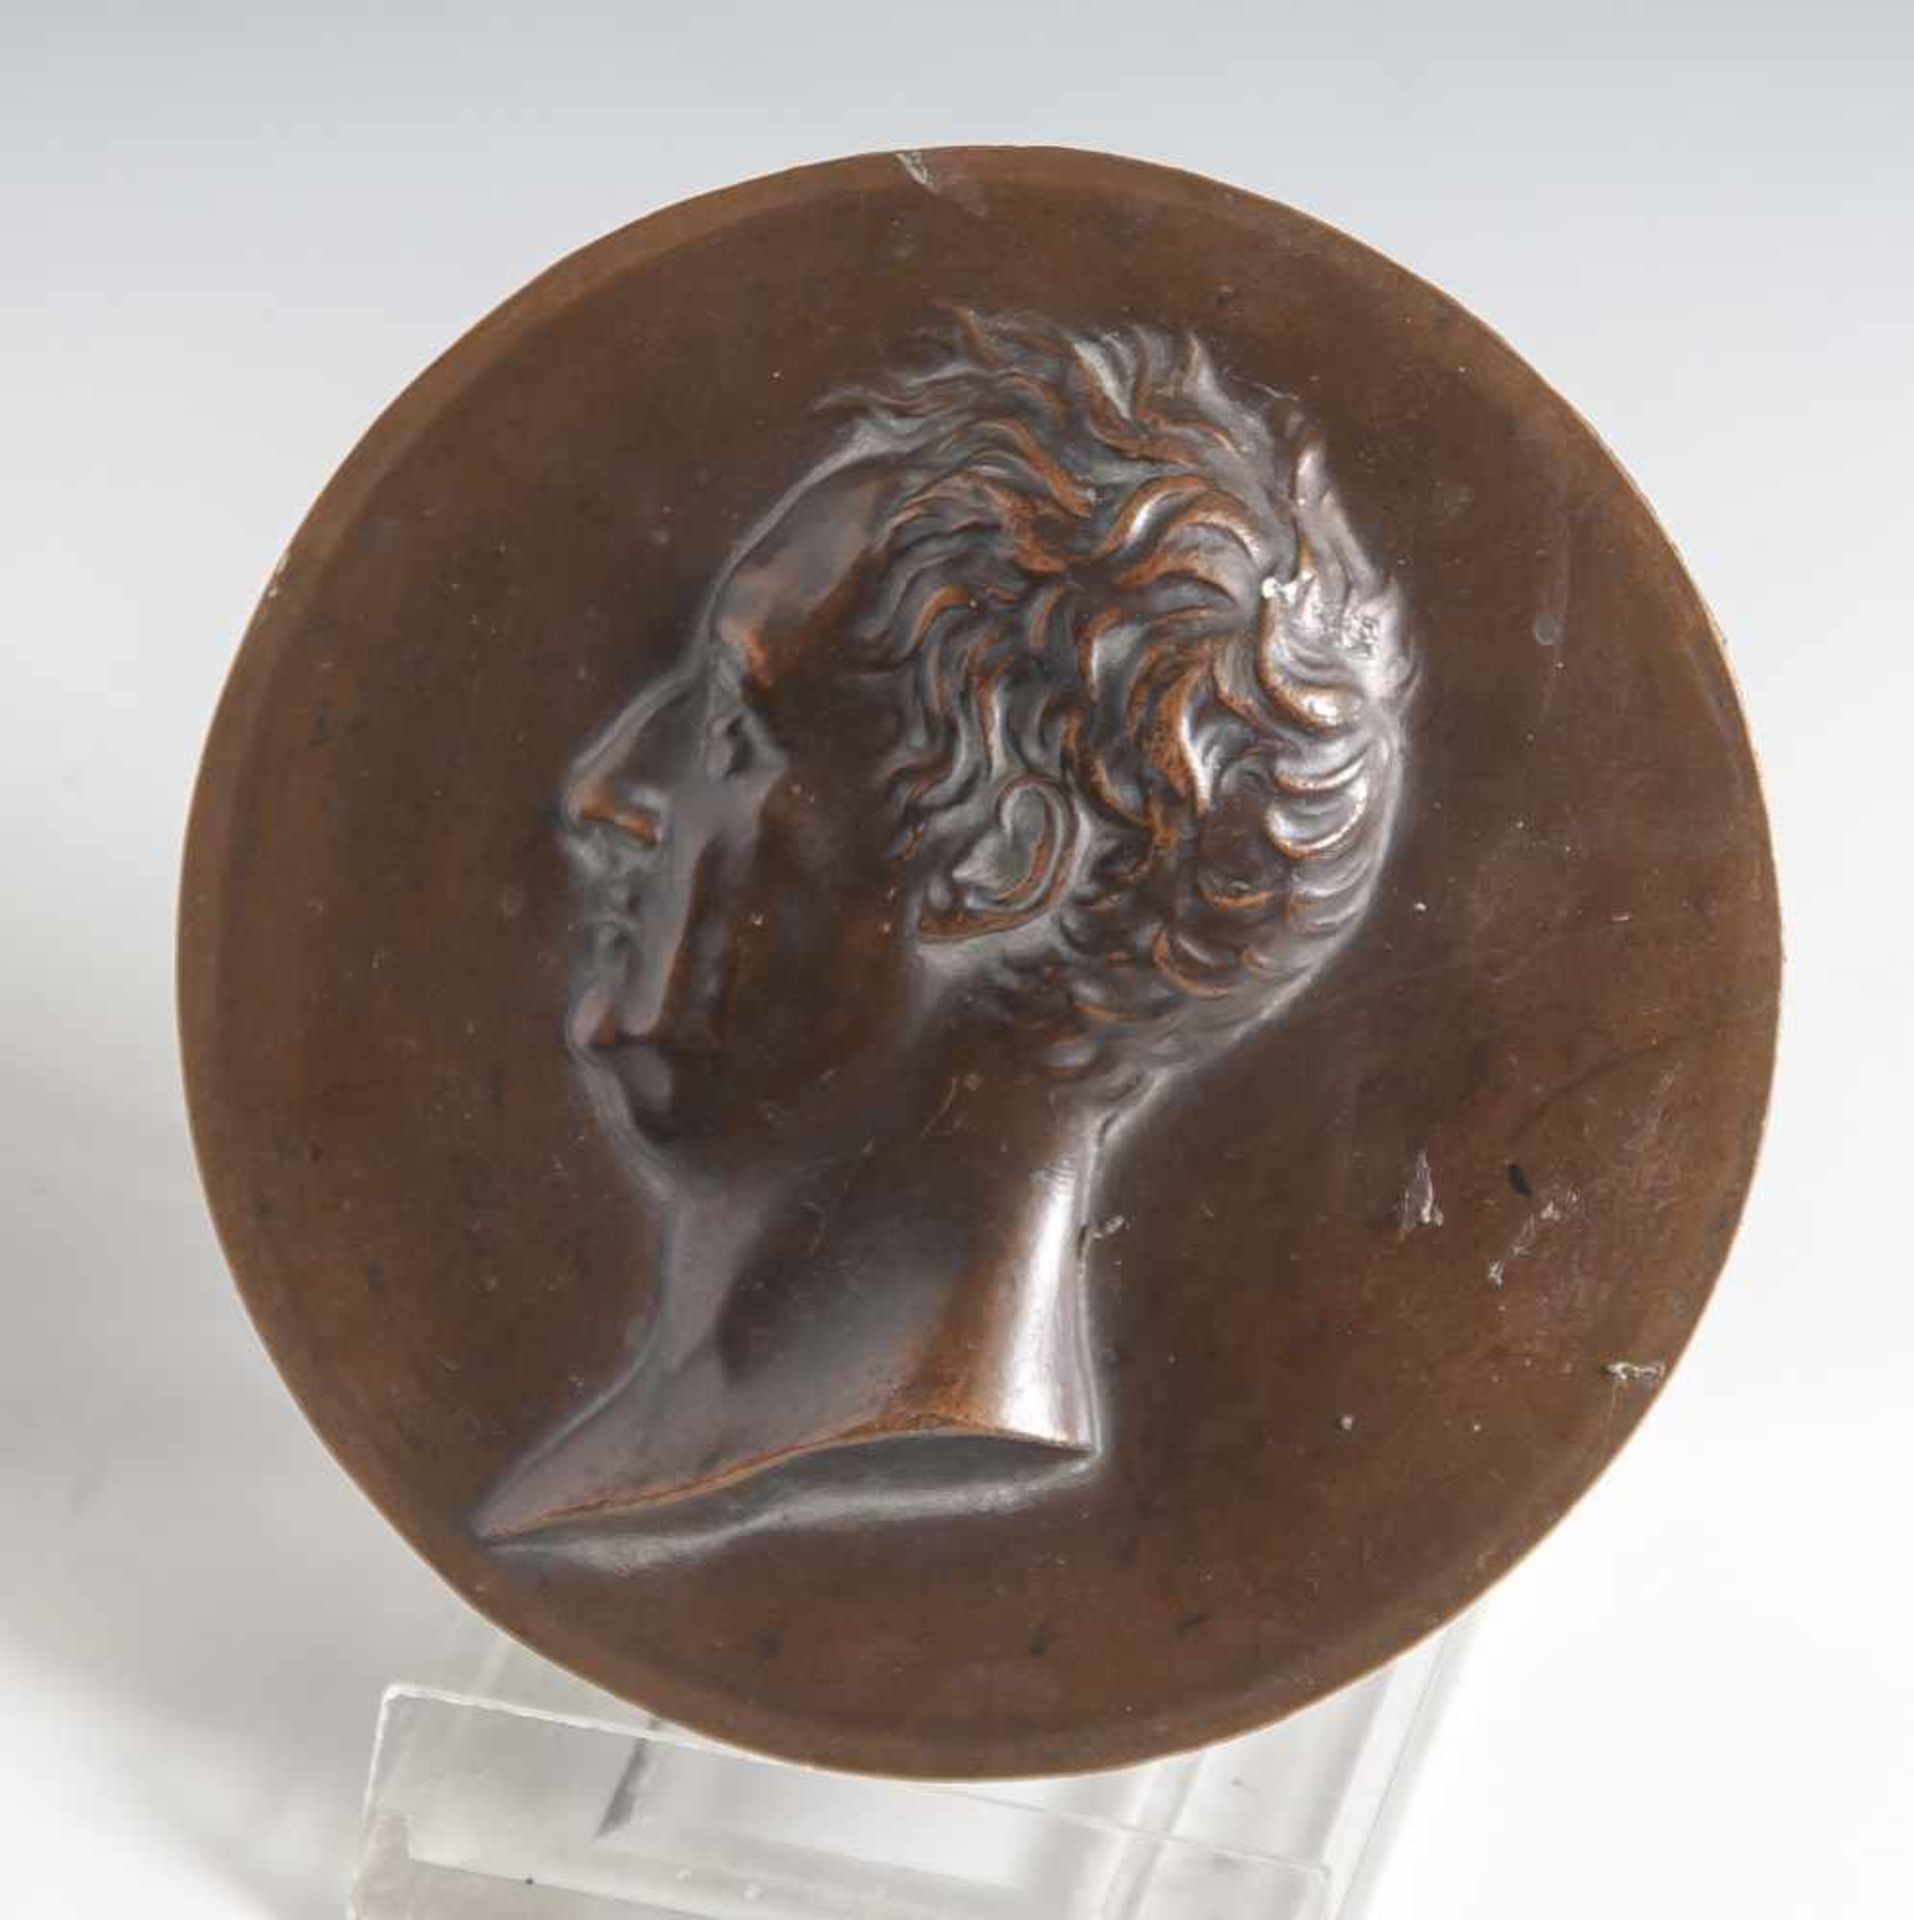 Runde Kupferplakette, reliefierte Darst. eines Mannes im Profil. DM ca. 10 cm.